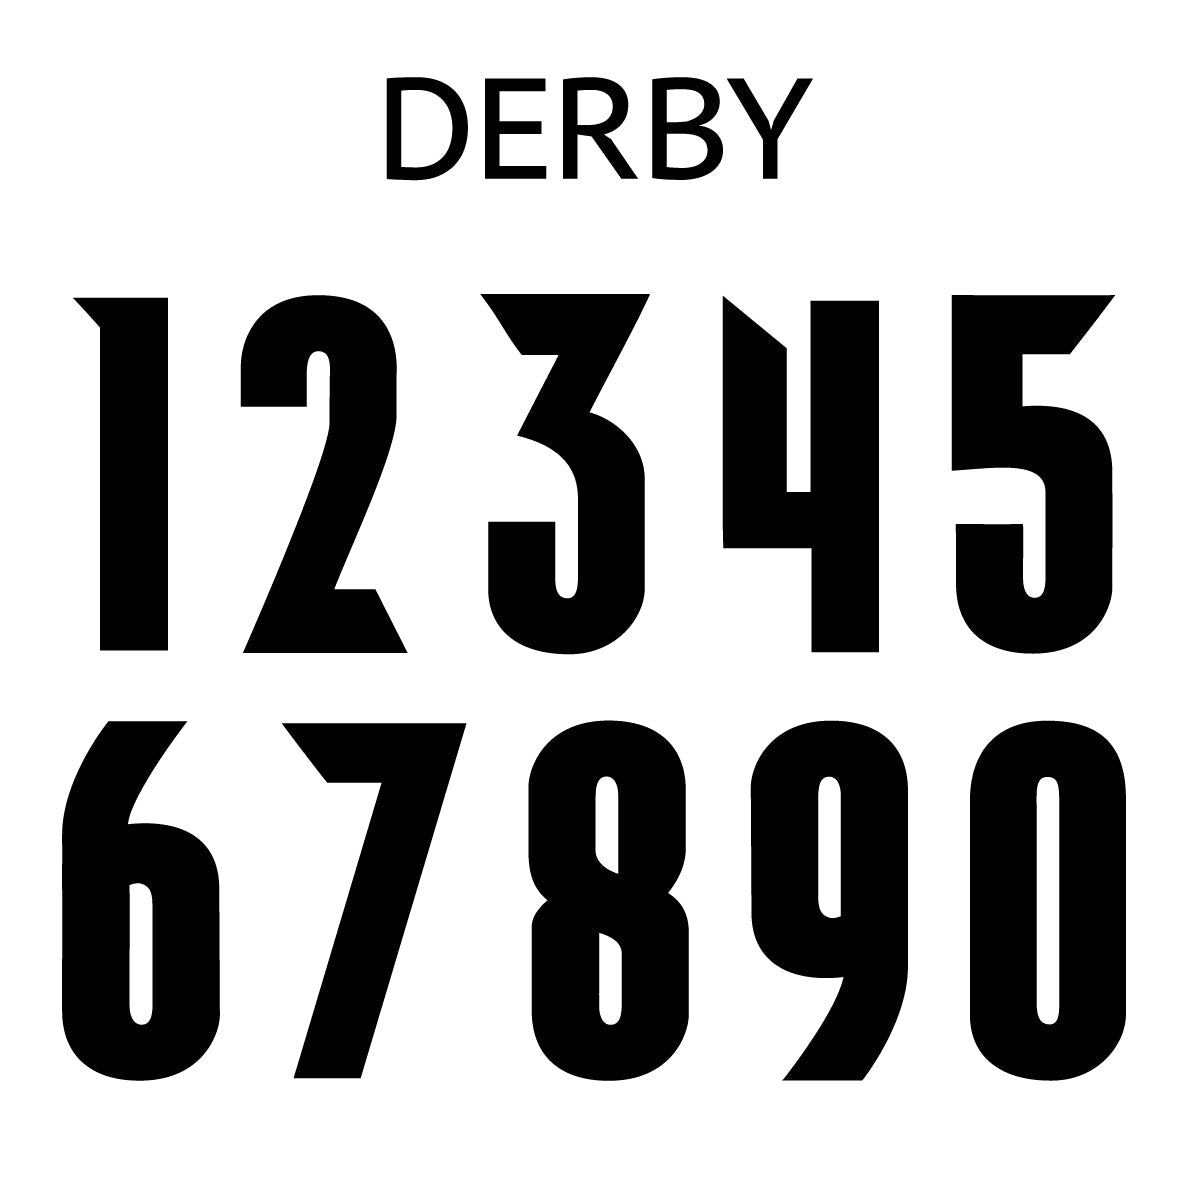 Derby Number Sheet